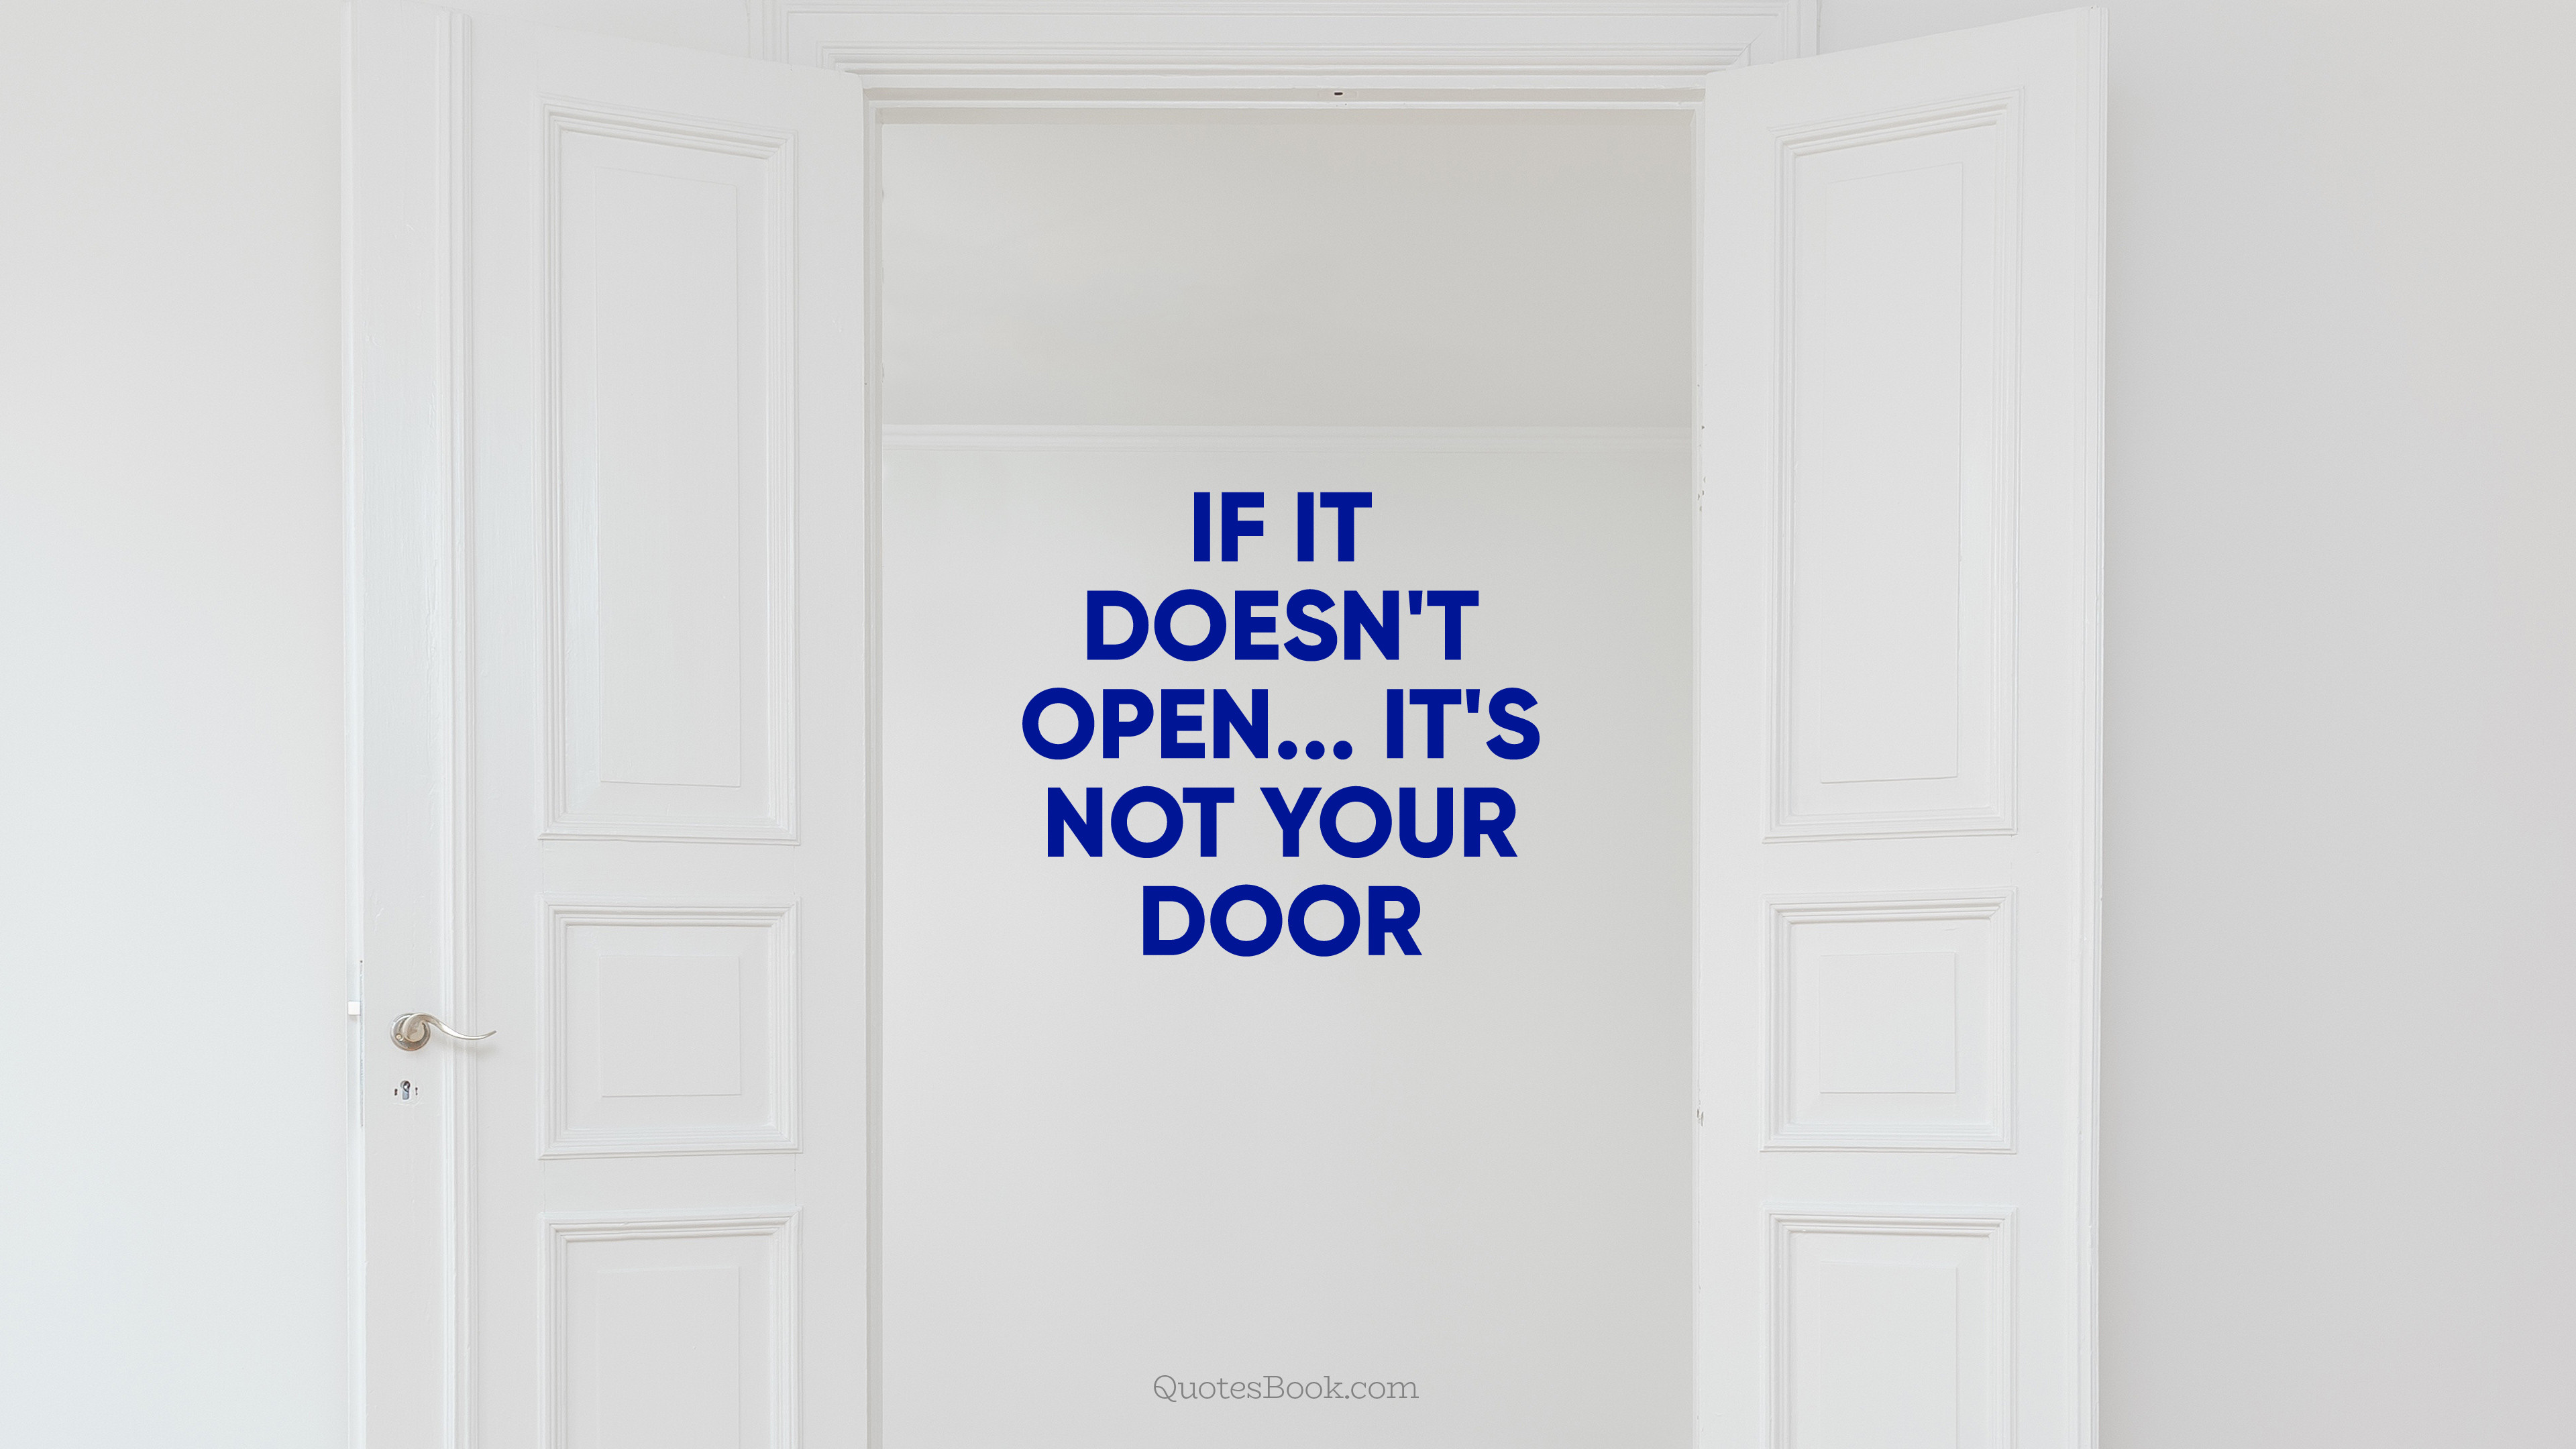 If it doesn't open is not your door - QuotesBook